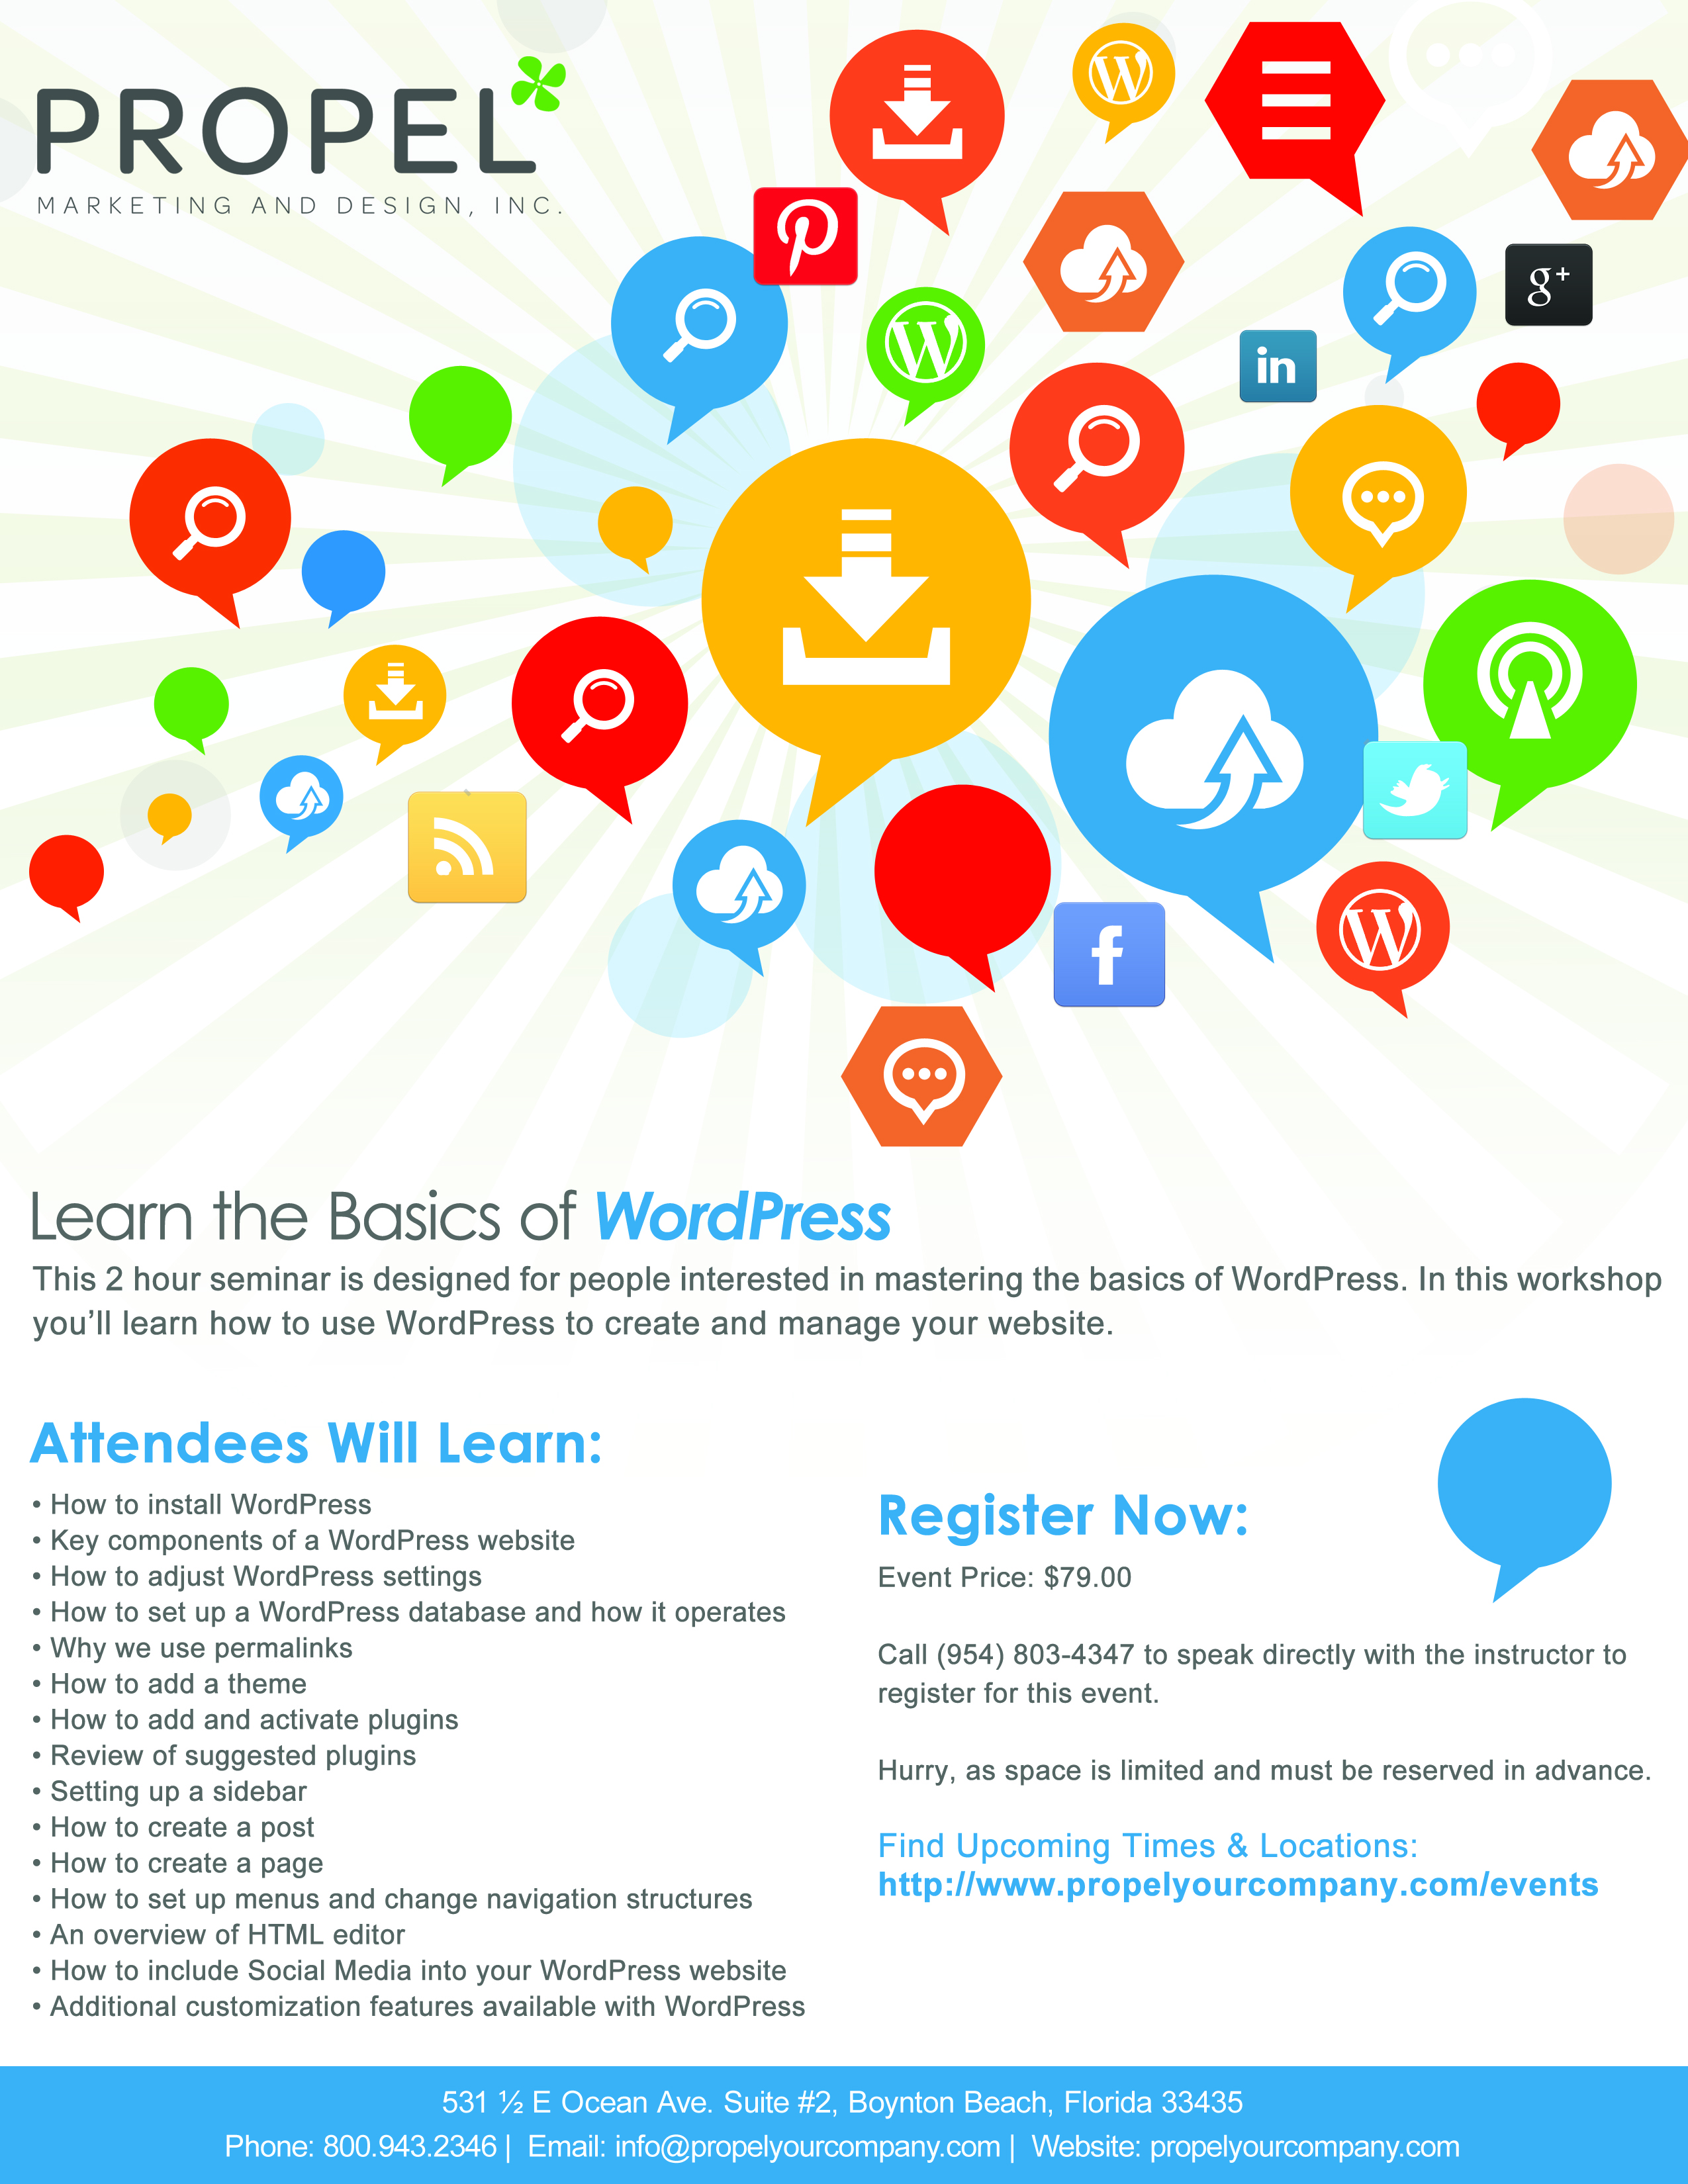 Learn the Basics of WordPress Workshop